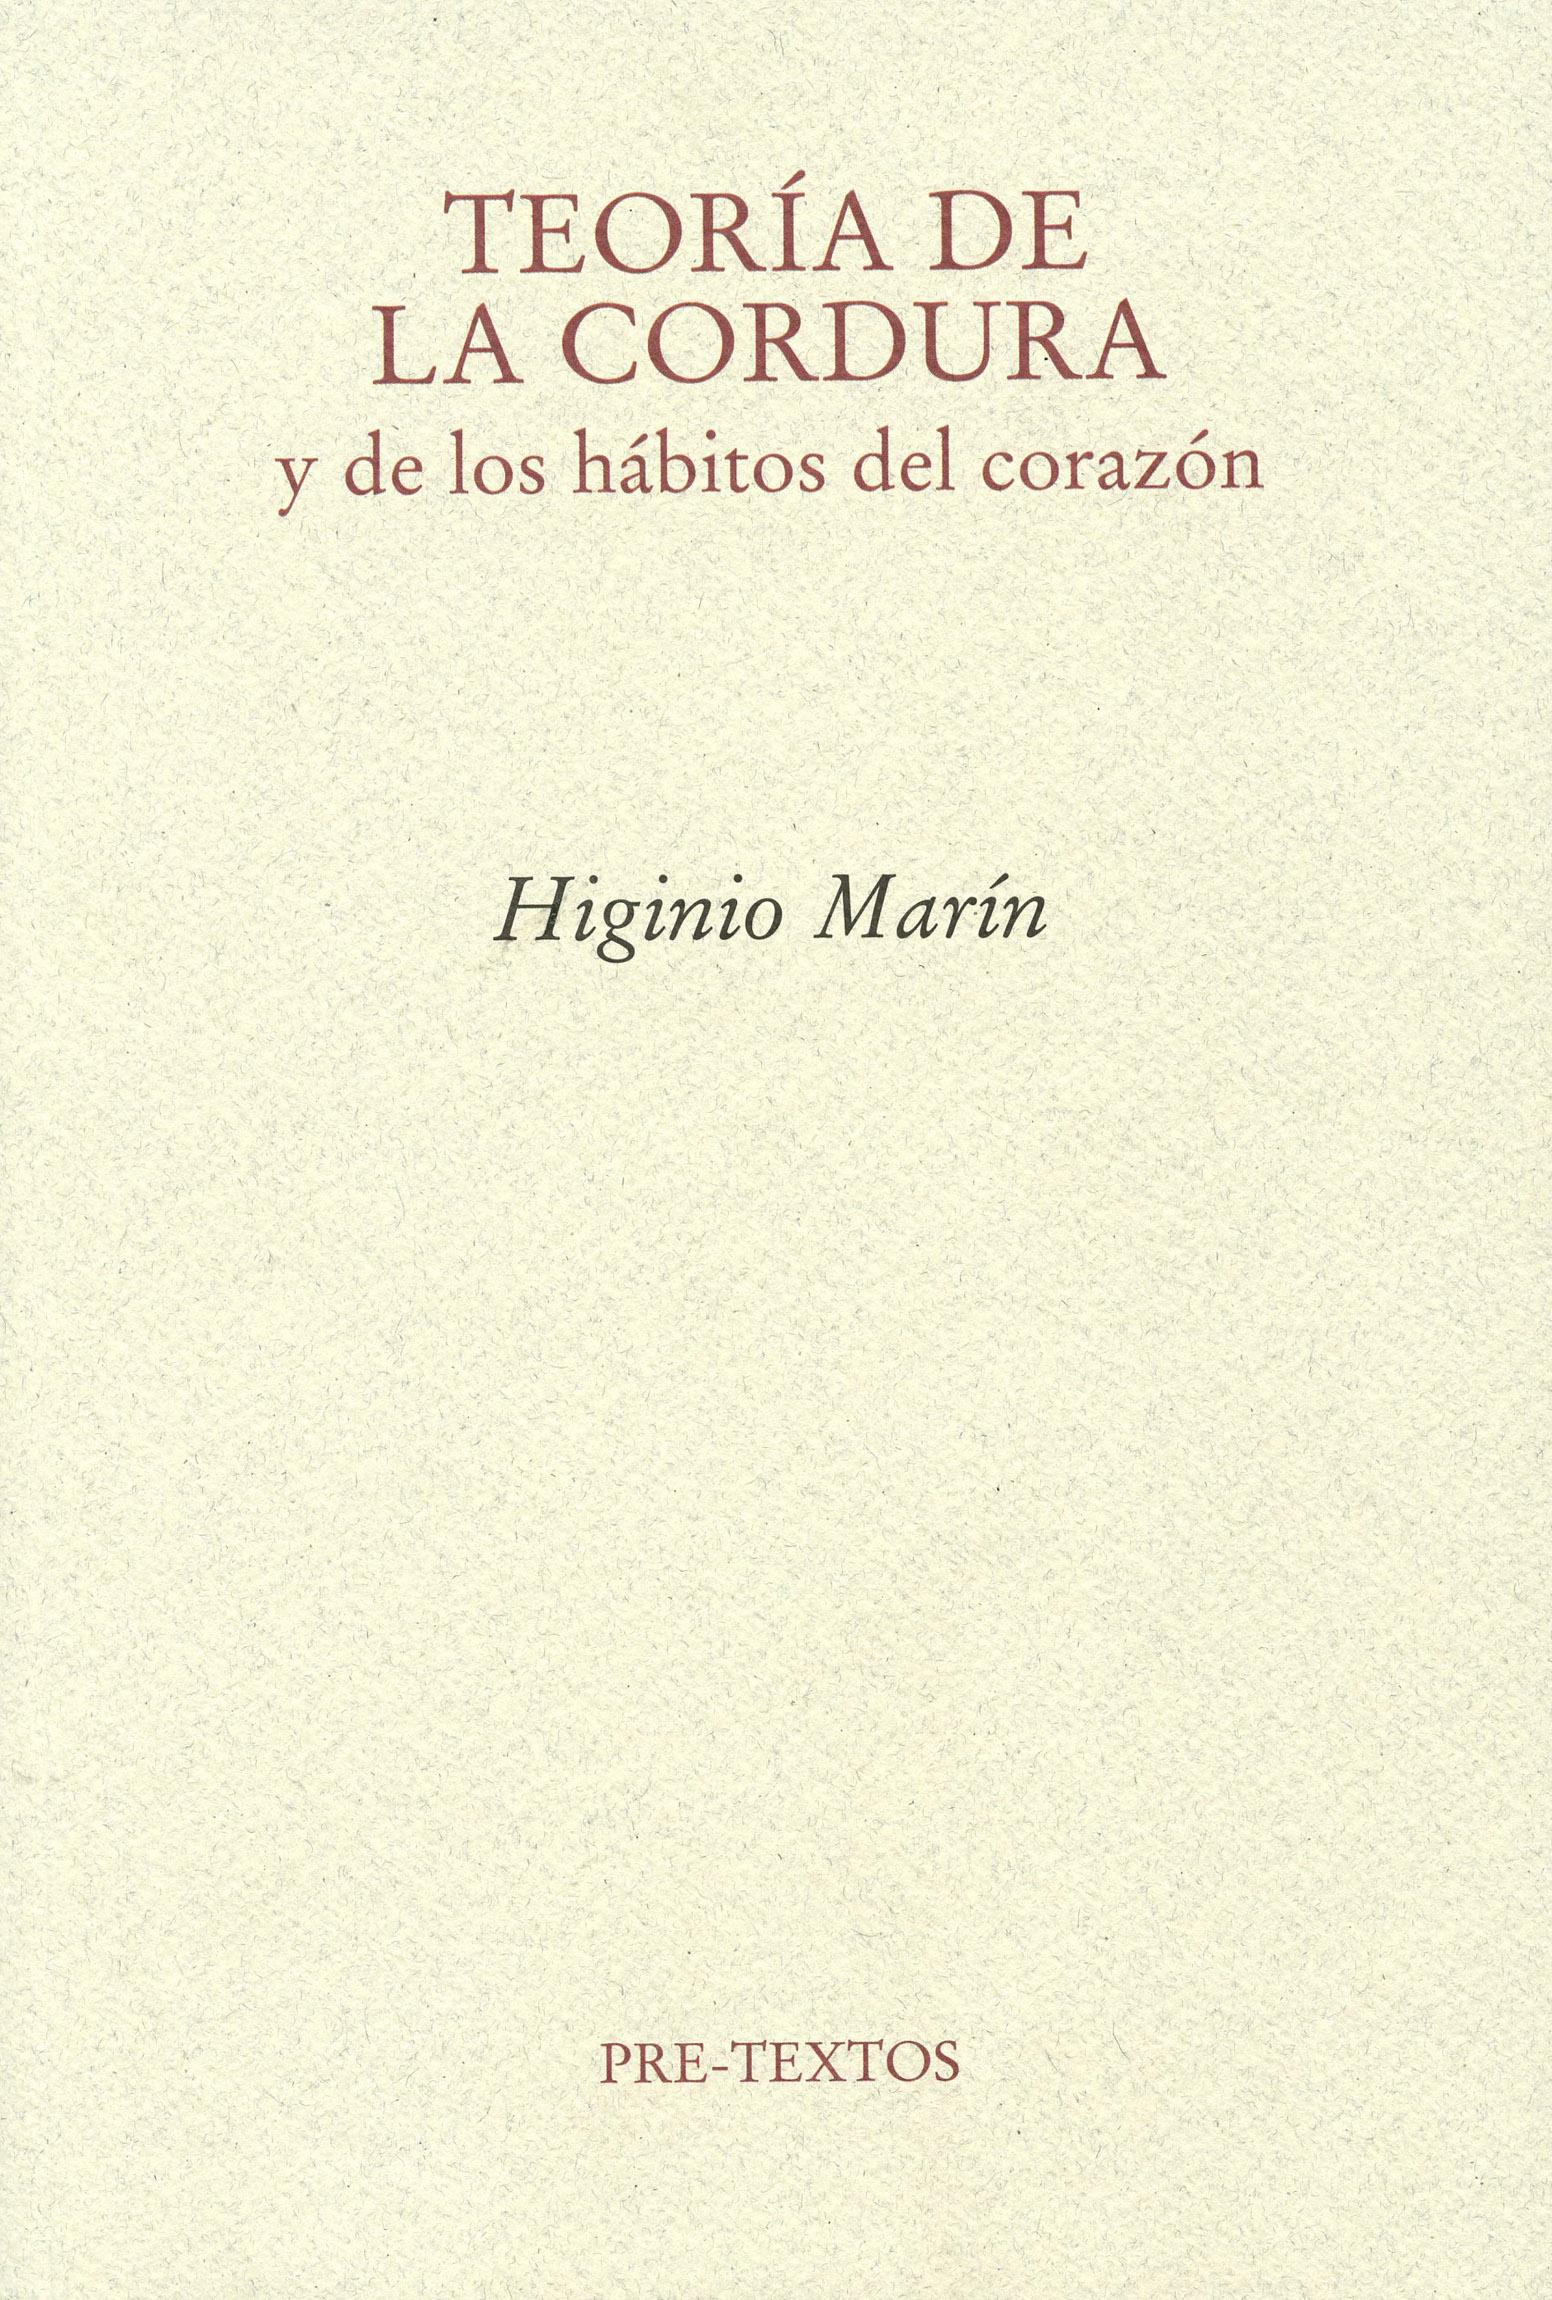 Teoría de la cordura y de los hábitos del corazón, de Higinio Marín: cuatro notas